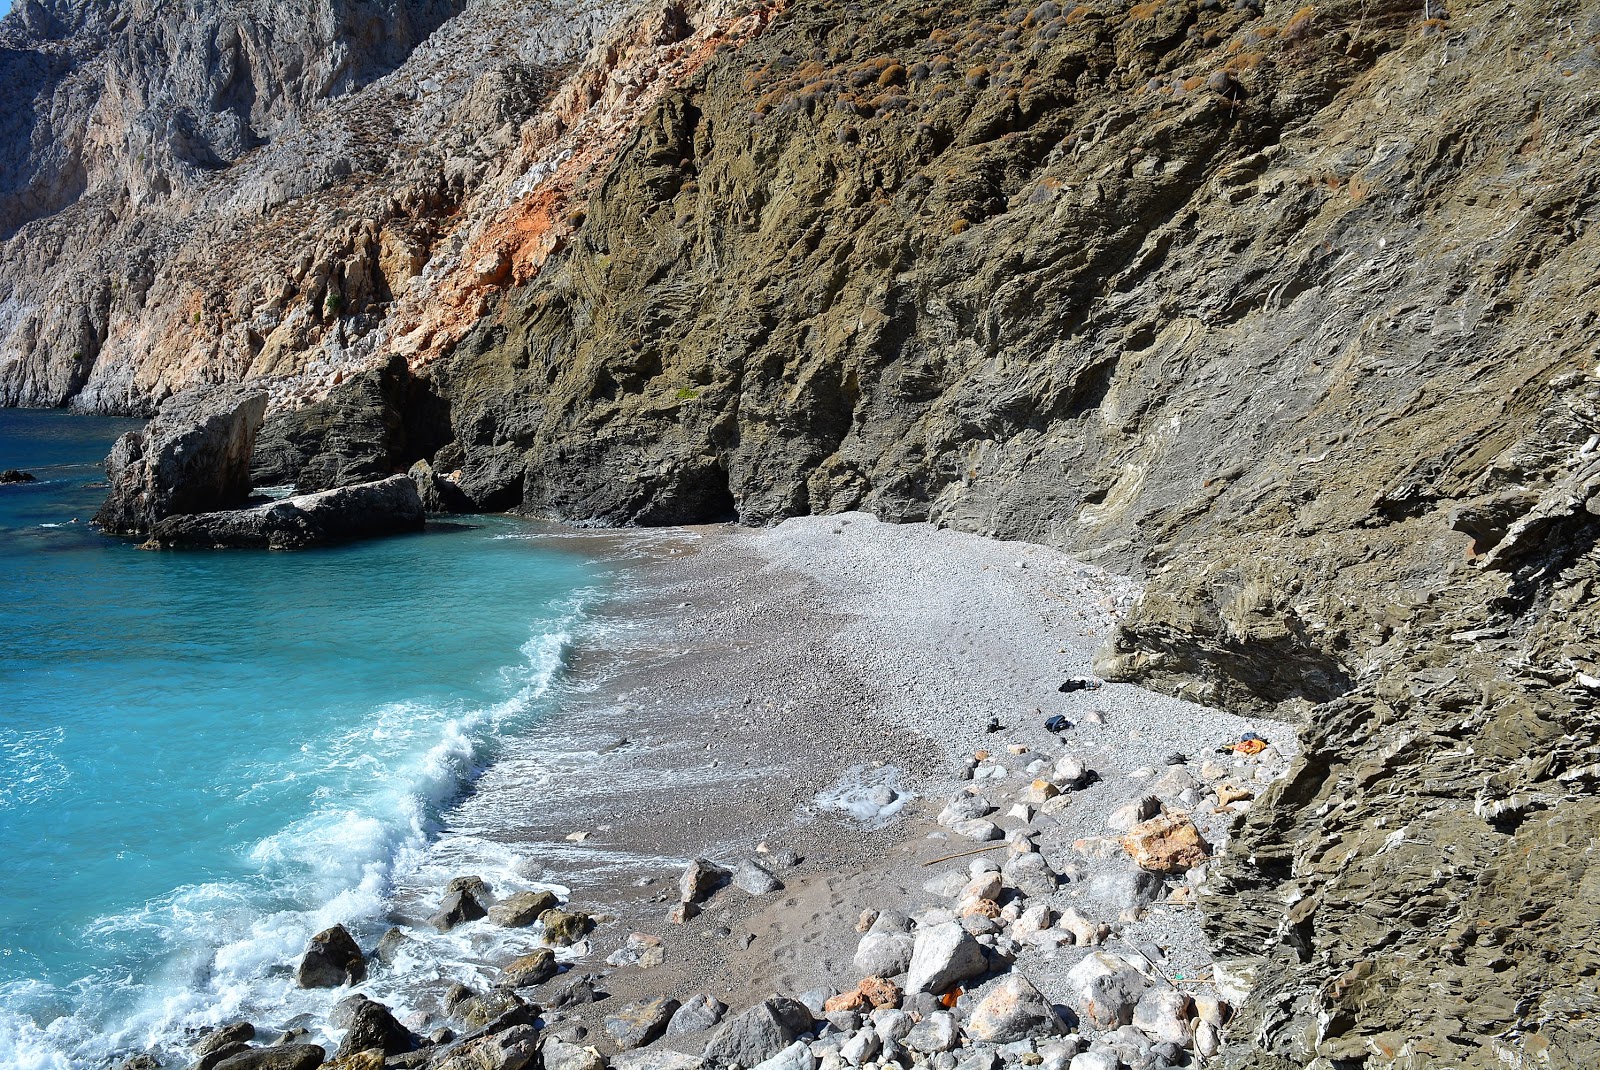 Agios Ioannis'in fotoğrafı hafif ince çakıl taş yüzey ile